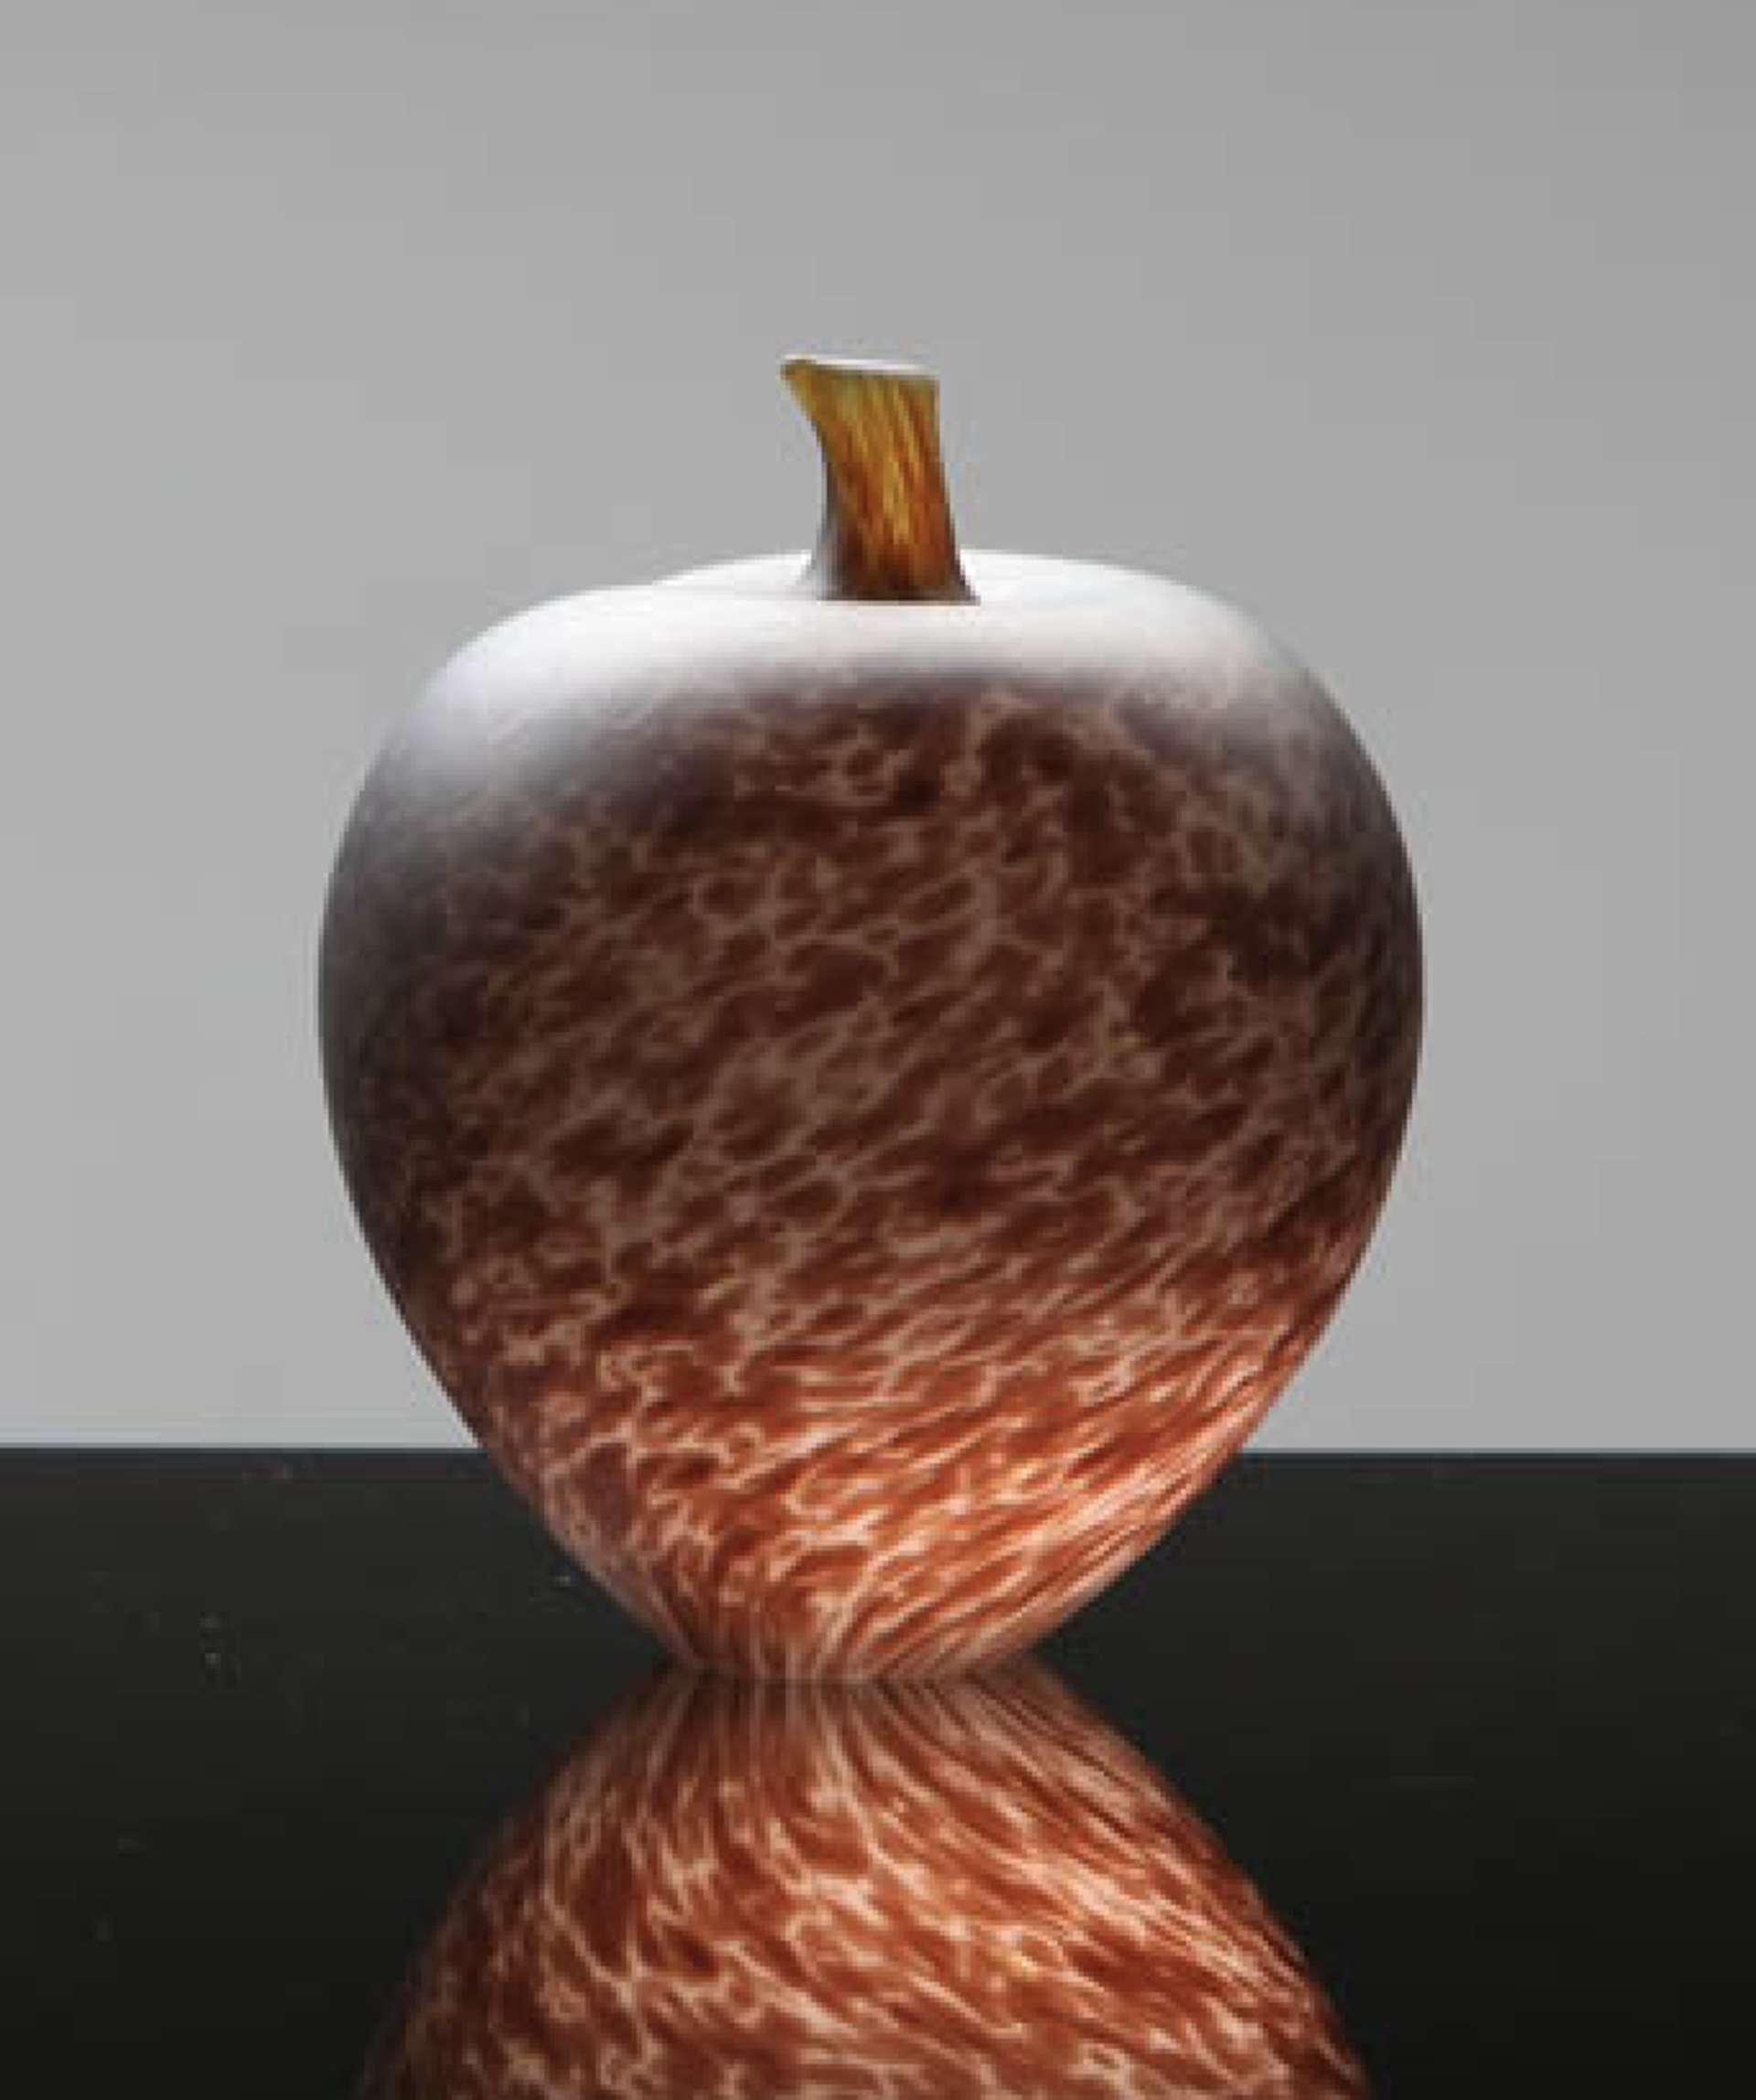 Apple by Robert Wynne